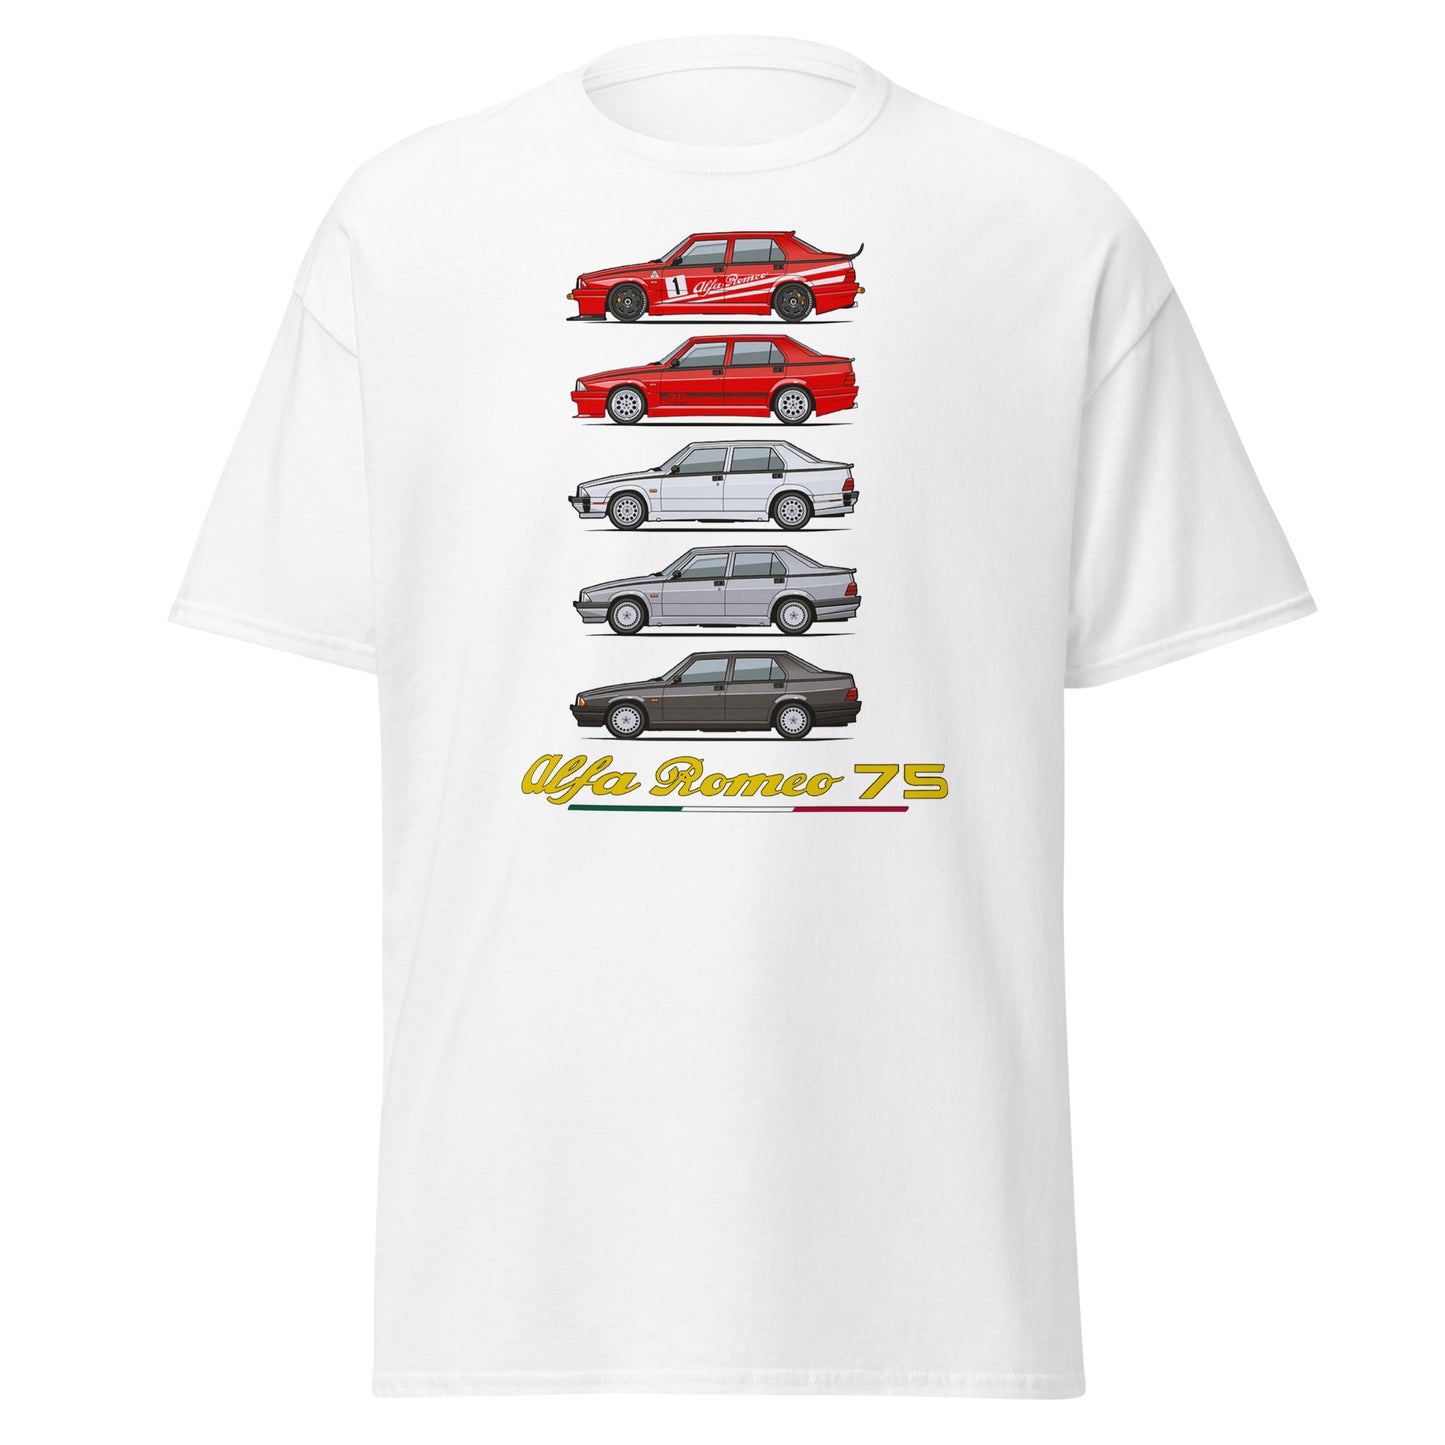 Alfa Romeo 75 evolution of the models T-shirt